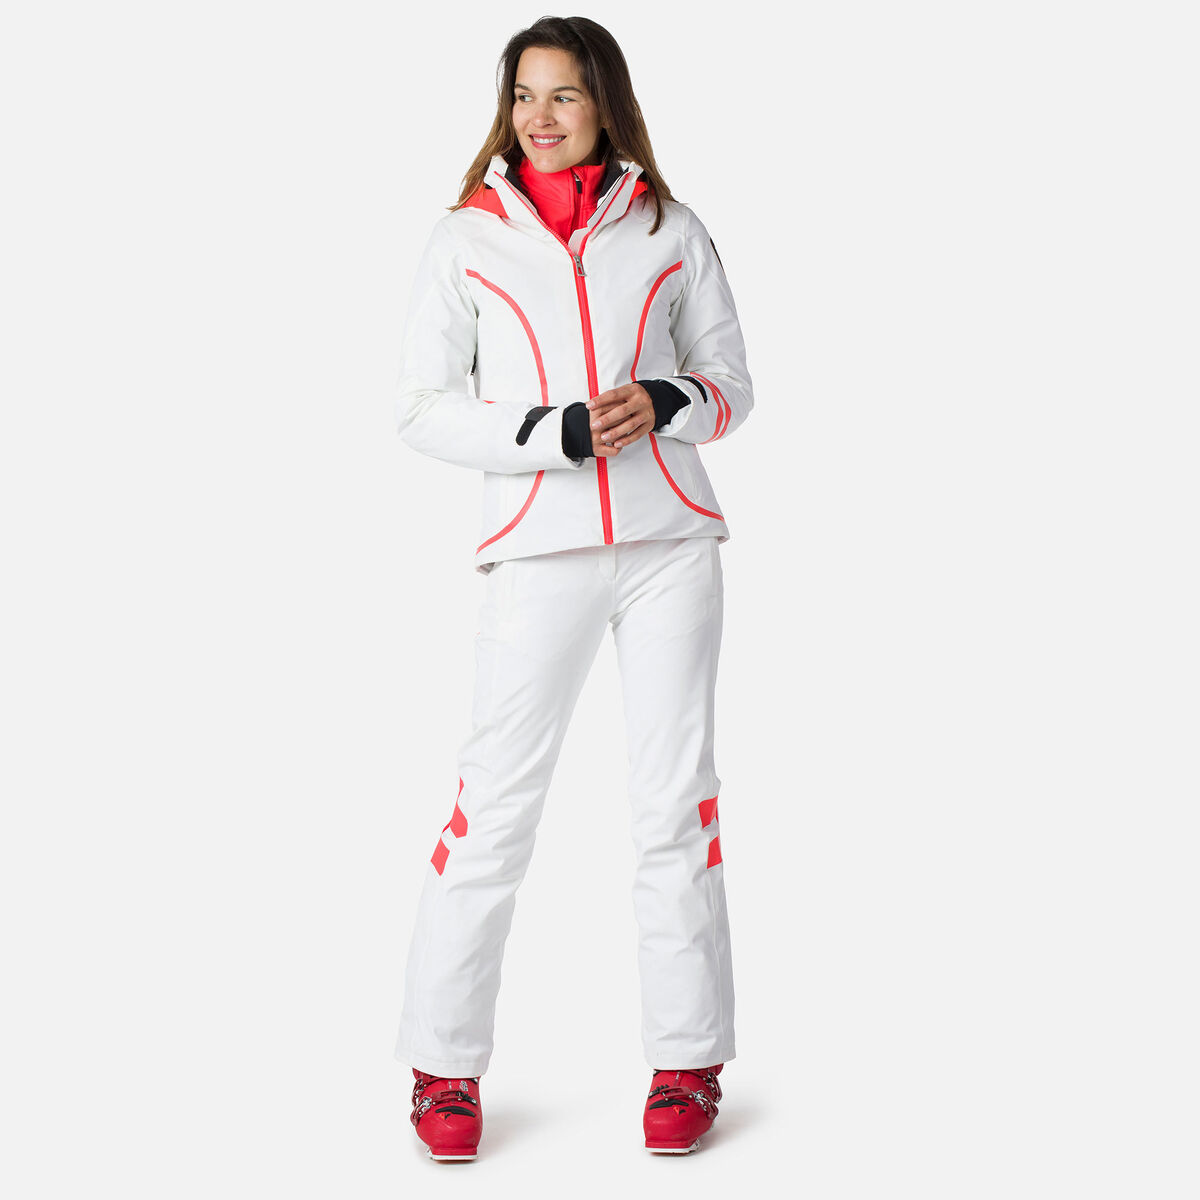 Women's Hero Four-Way Stretch Ski Jacket, Women